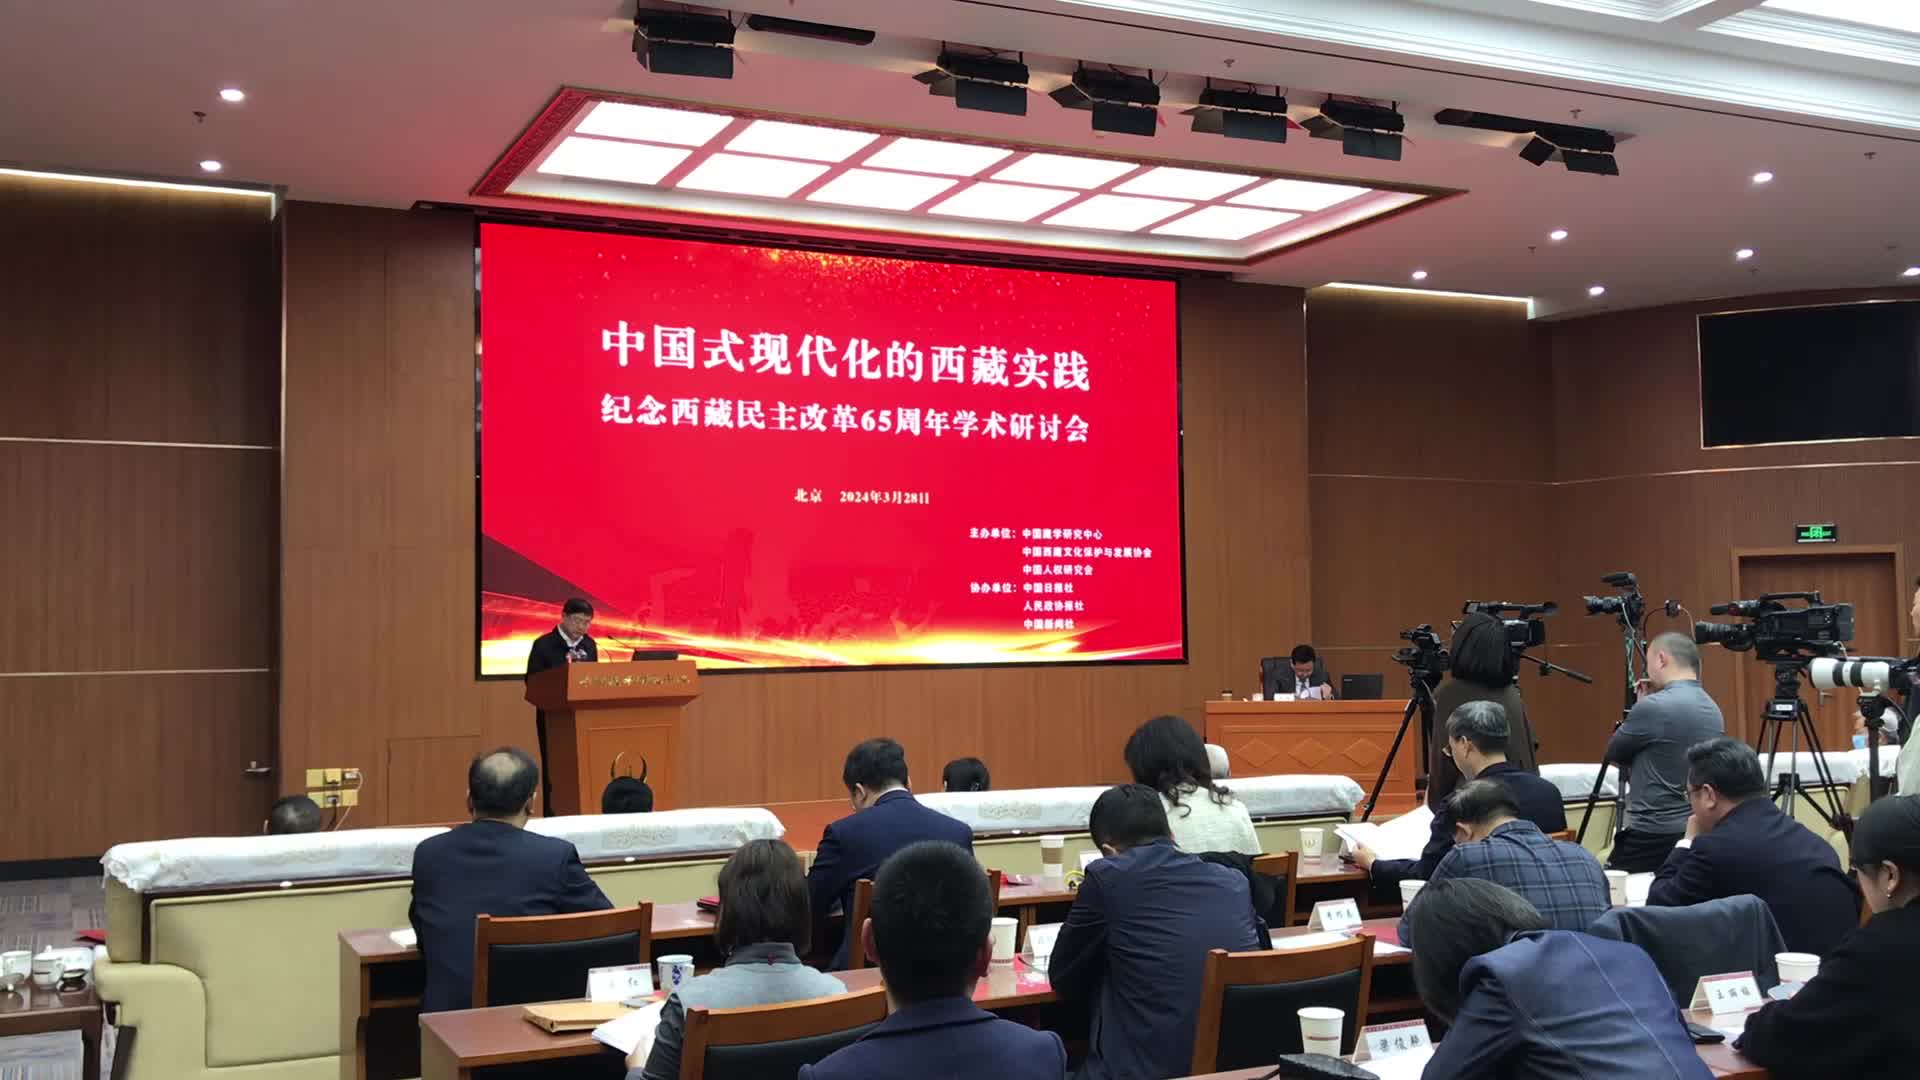 纪念西藏民主改革65周年学术研讨会在京举行